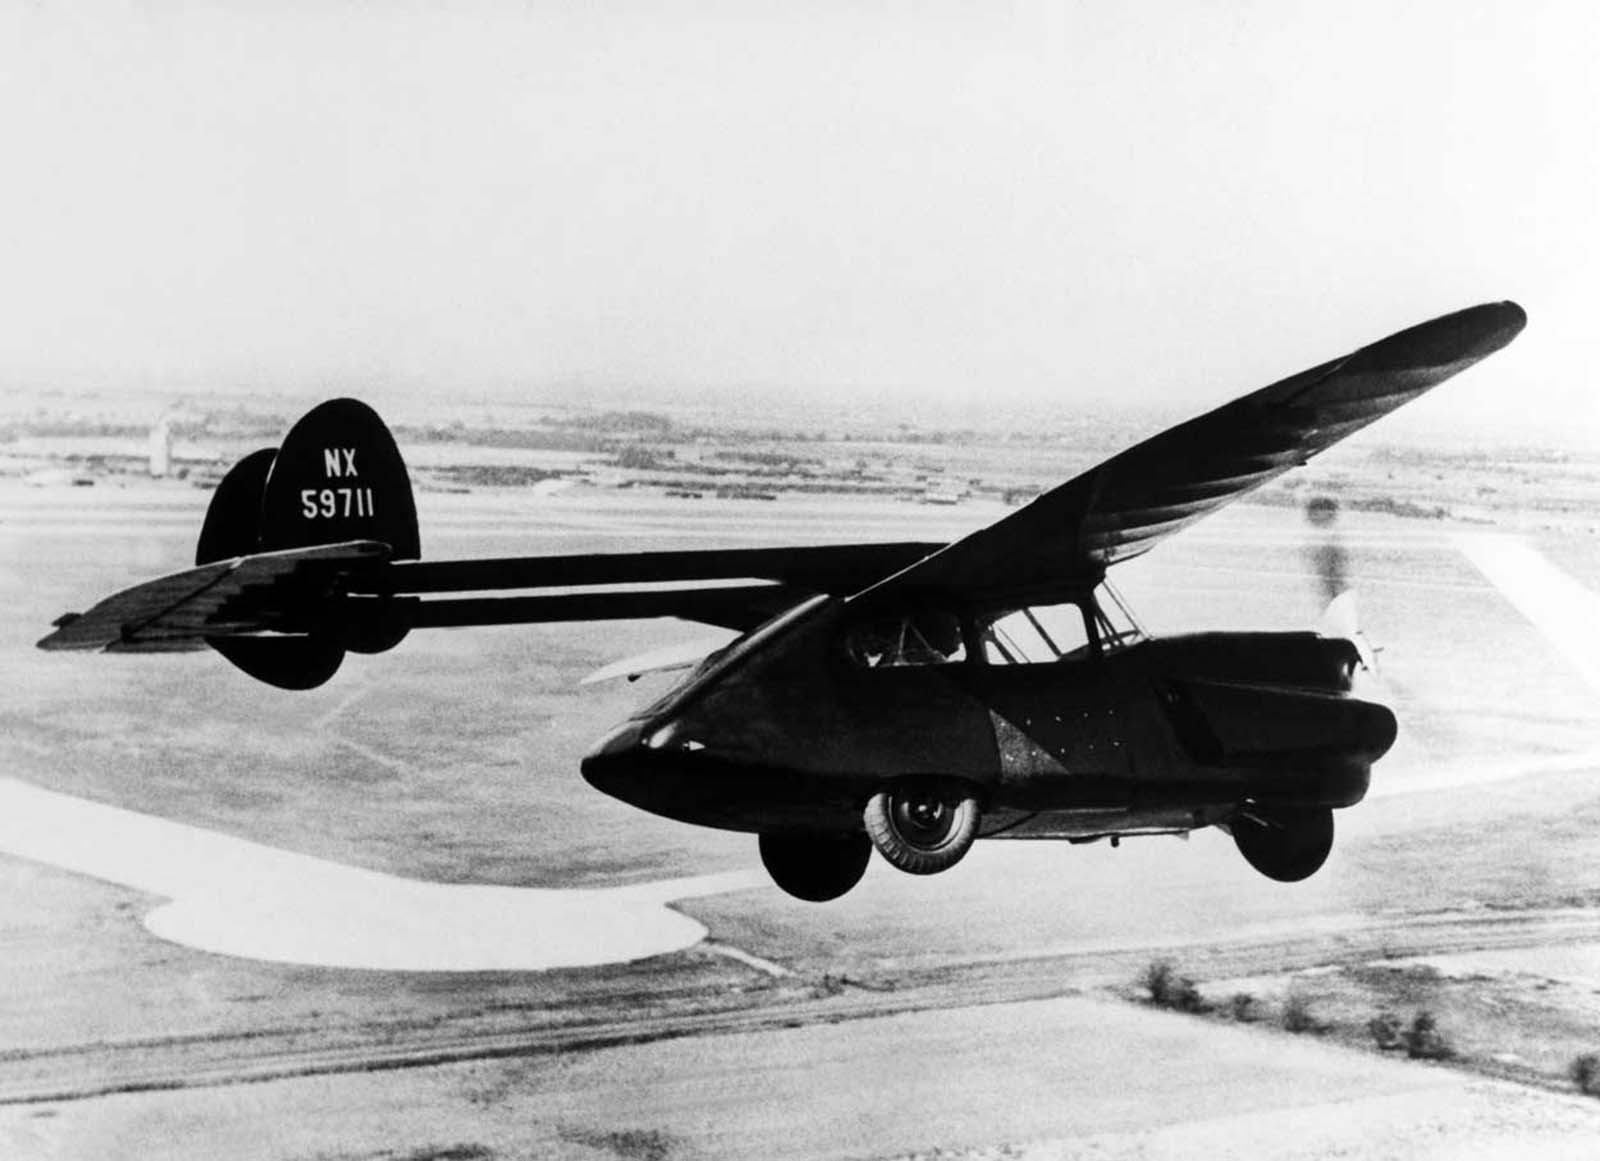 L'étrange histoire de vol de voitures, 1920-1970